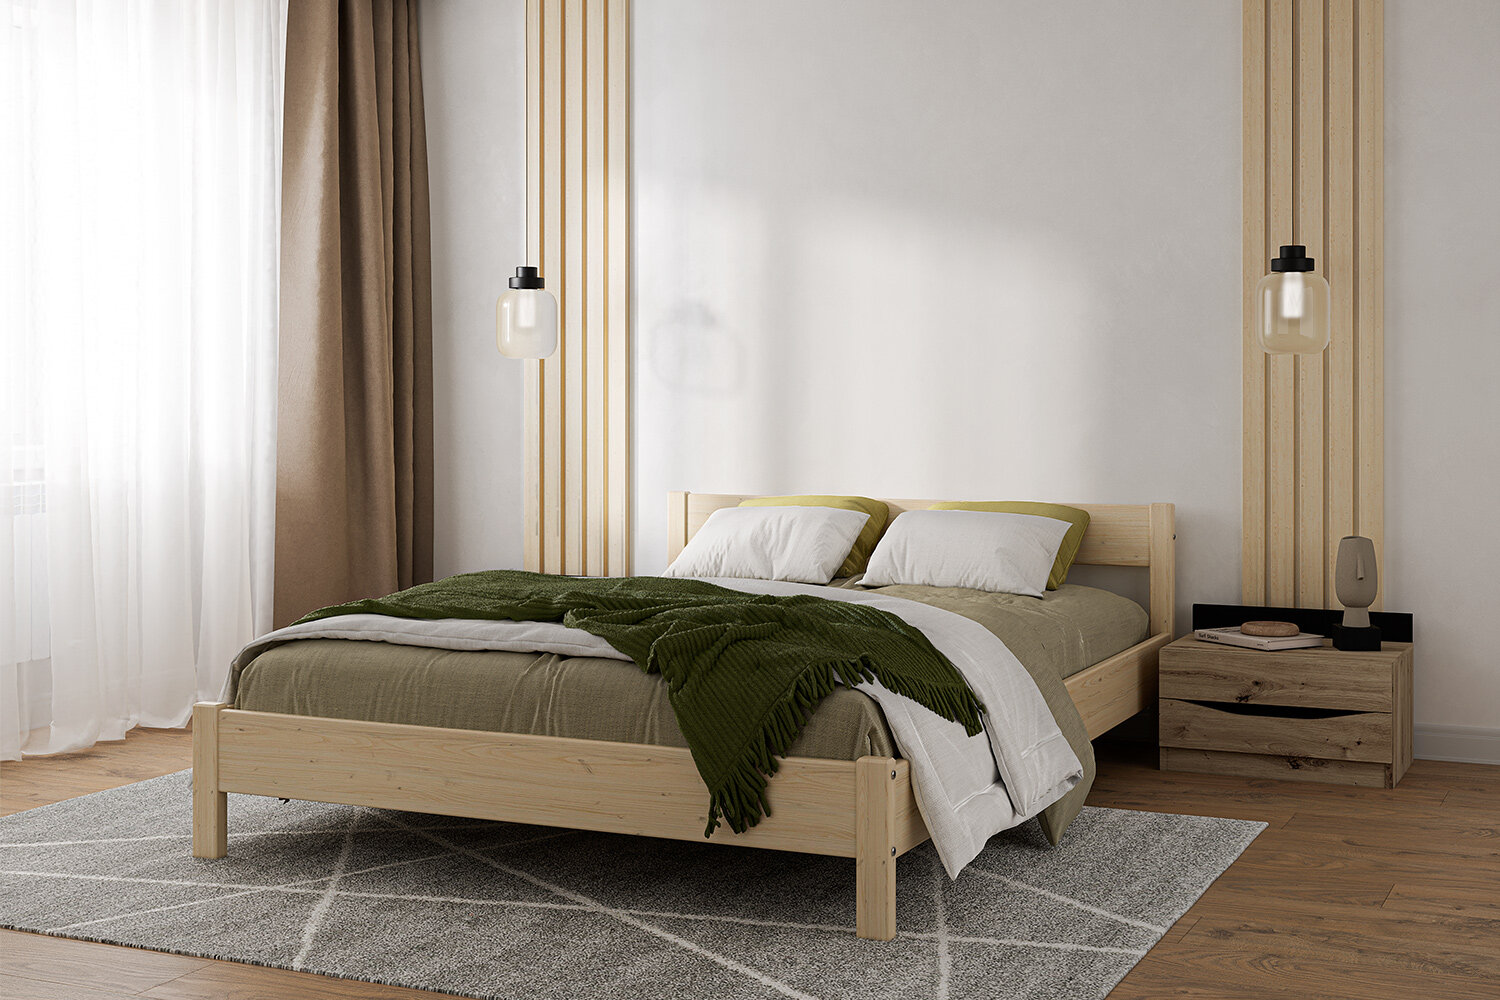 Кровать 160х200 см, из натурального дерева, двуспальная (аналог икеа)